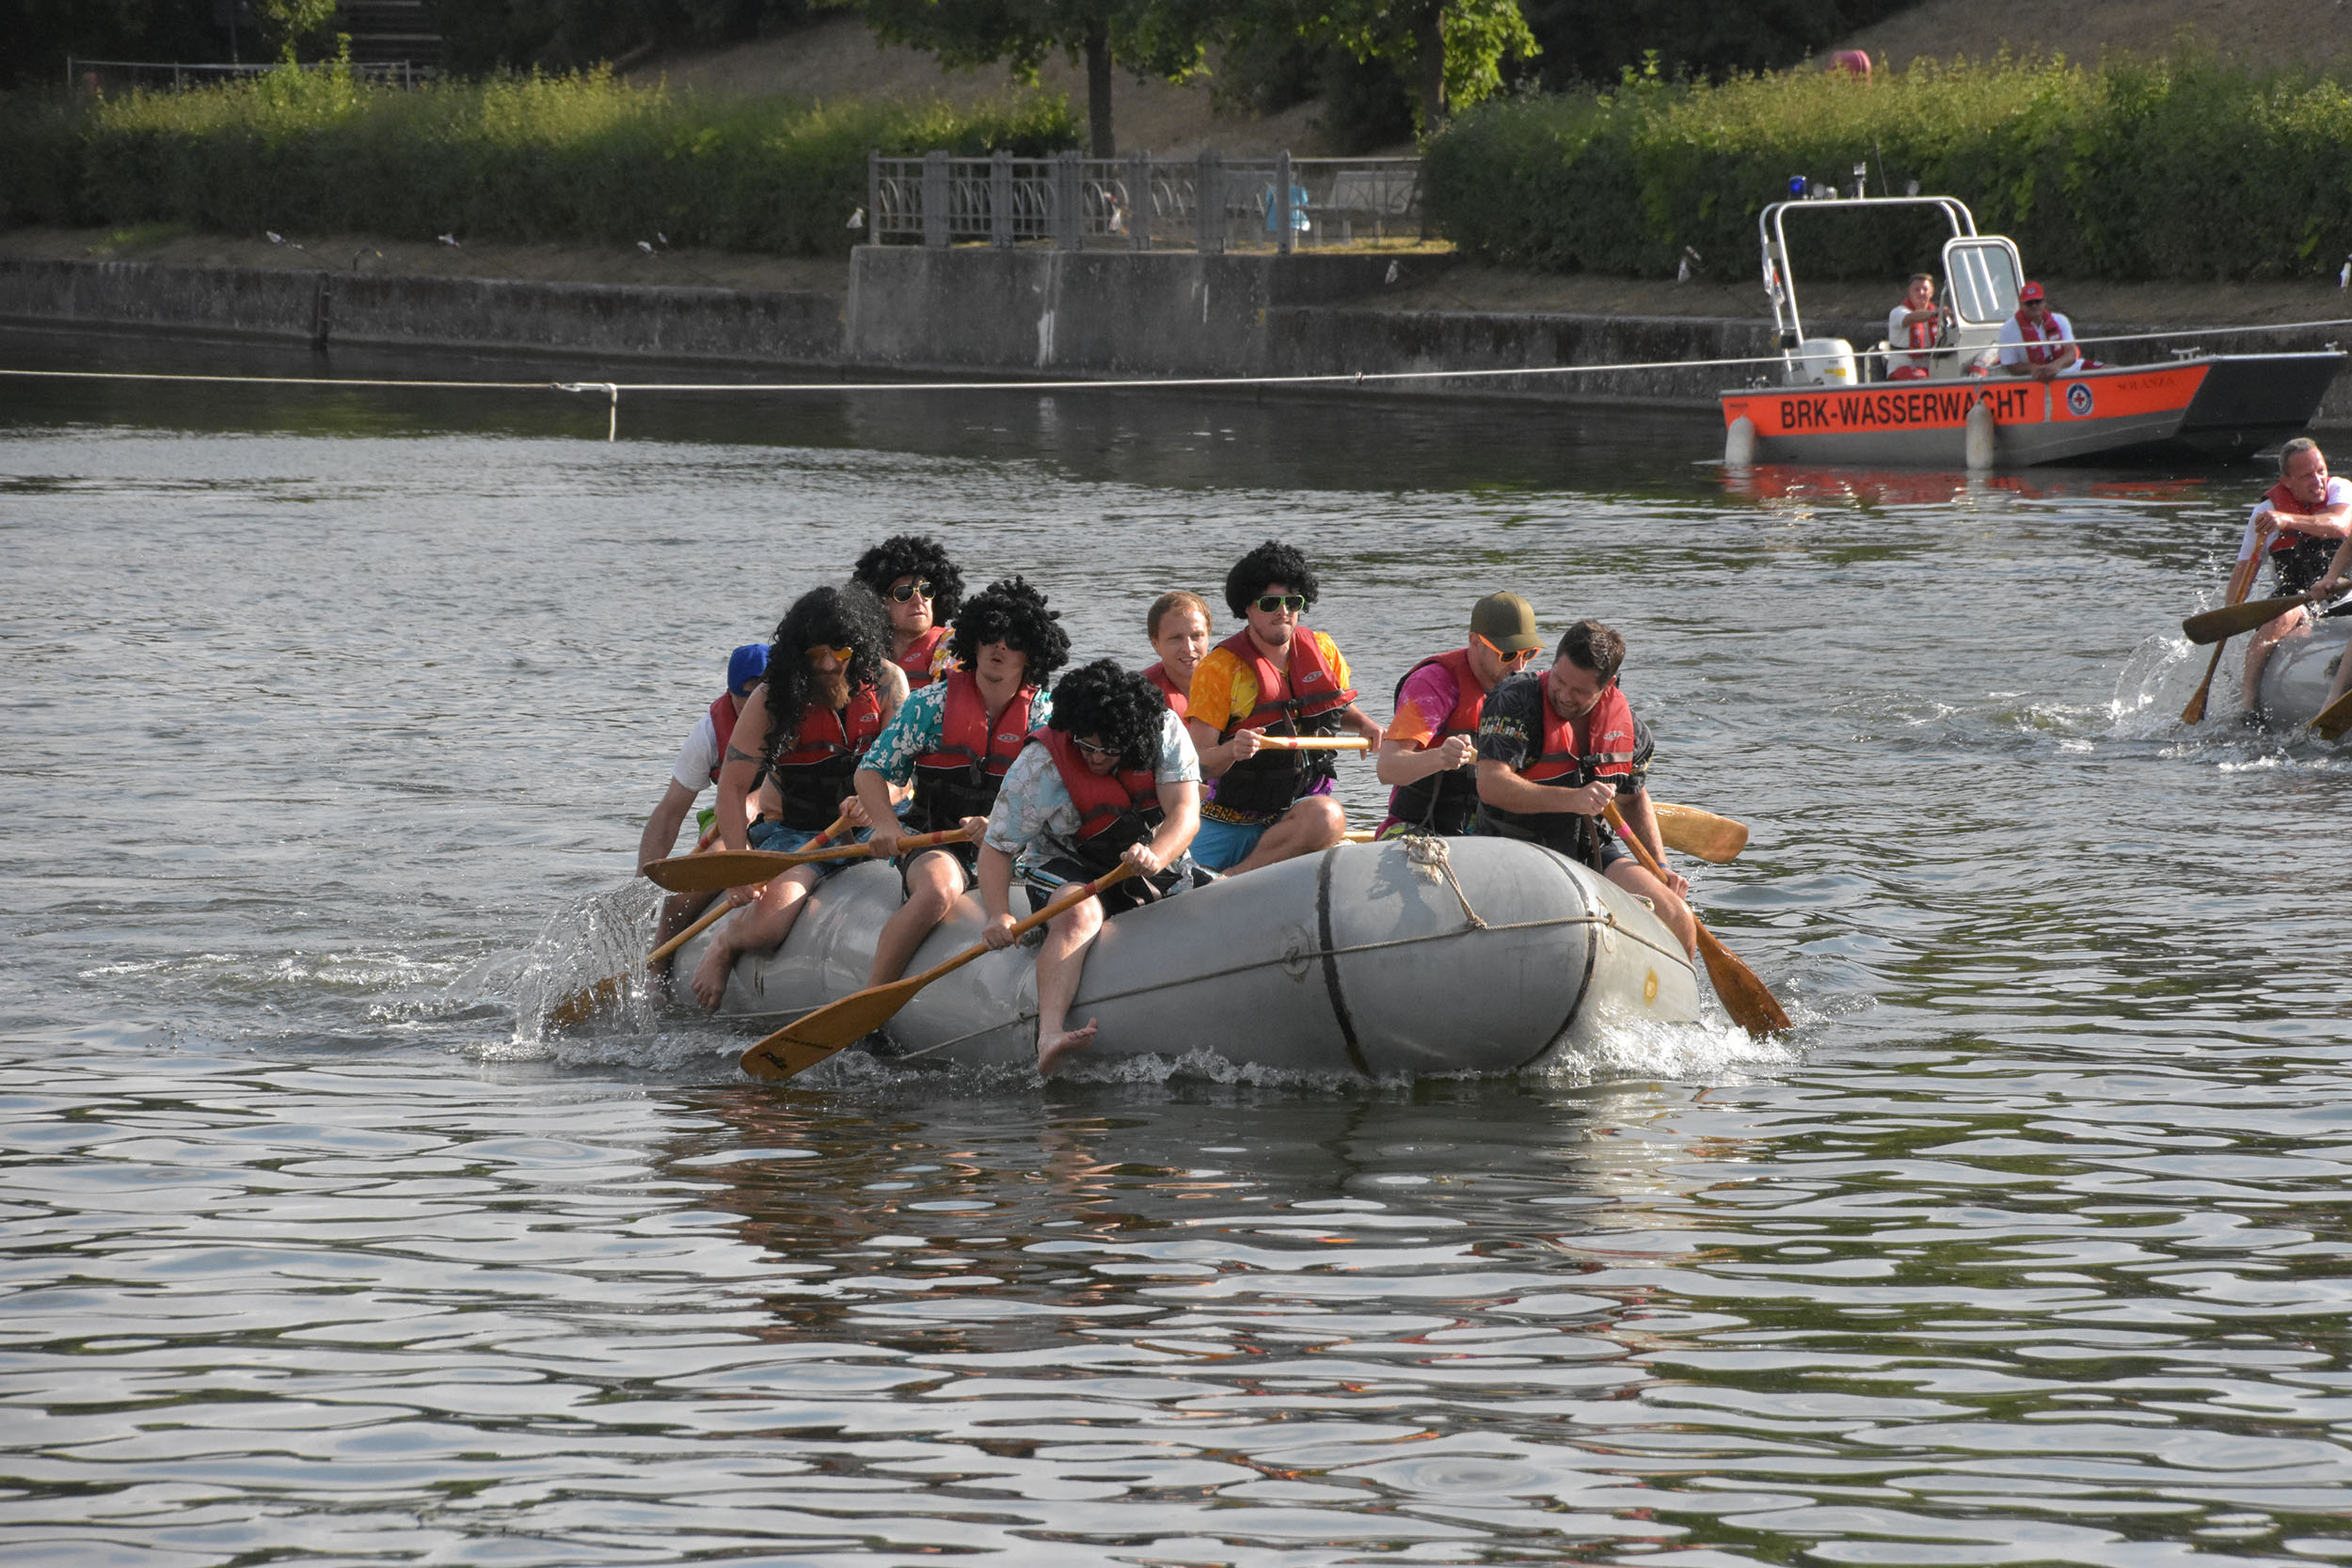 Jedes Jahr lockt das Paddelbootrennen der Wasserwacht am Samstagnachmittag die Teilnehmer*innen und Besucher*innen an den Uferpromenade